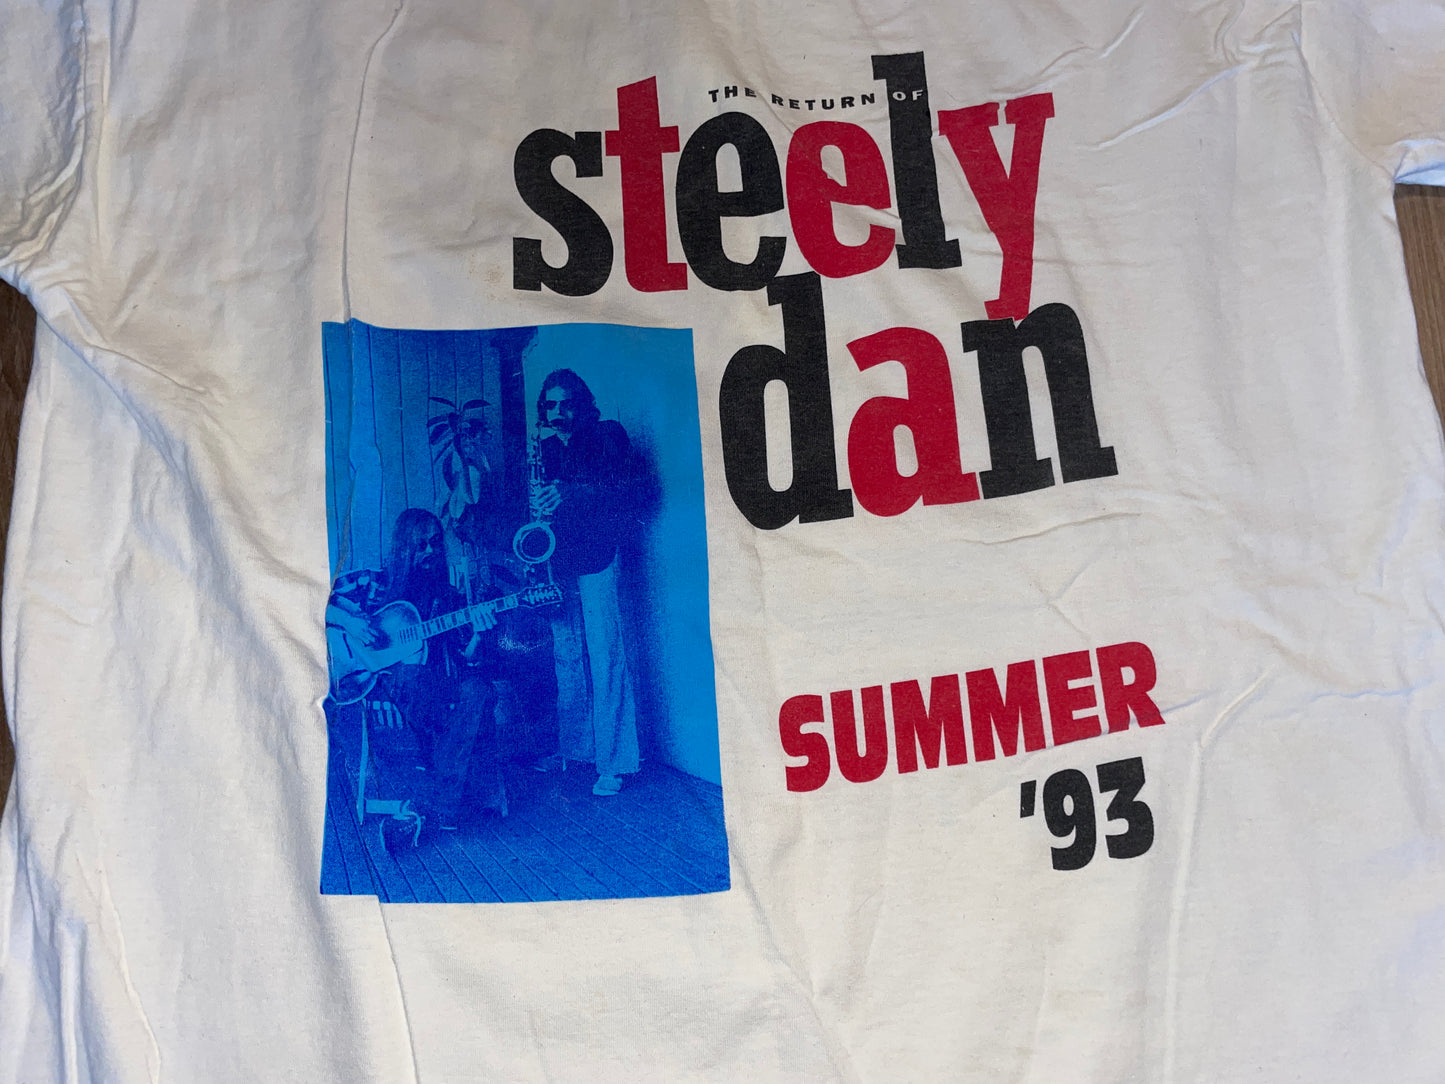 Vintage 1993 Steely Dan Shirt